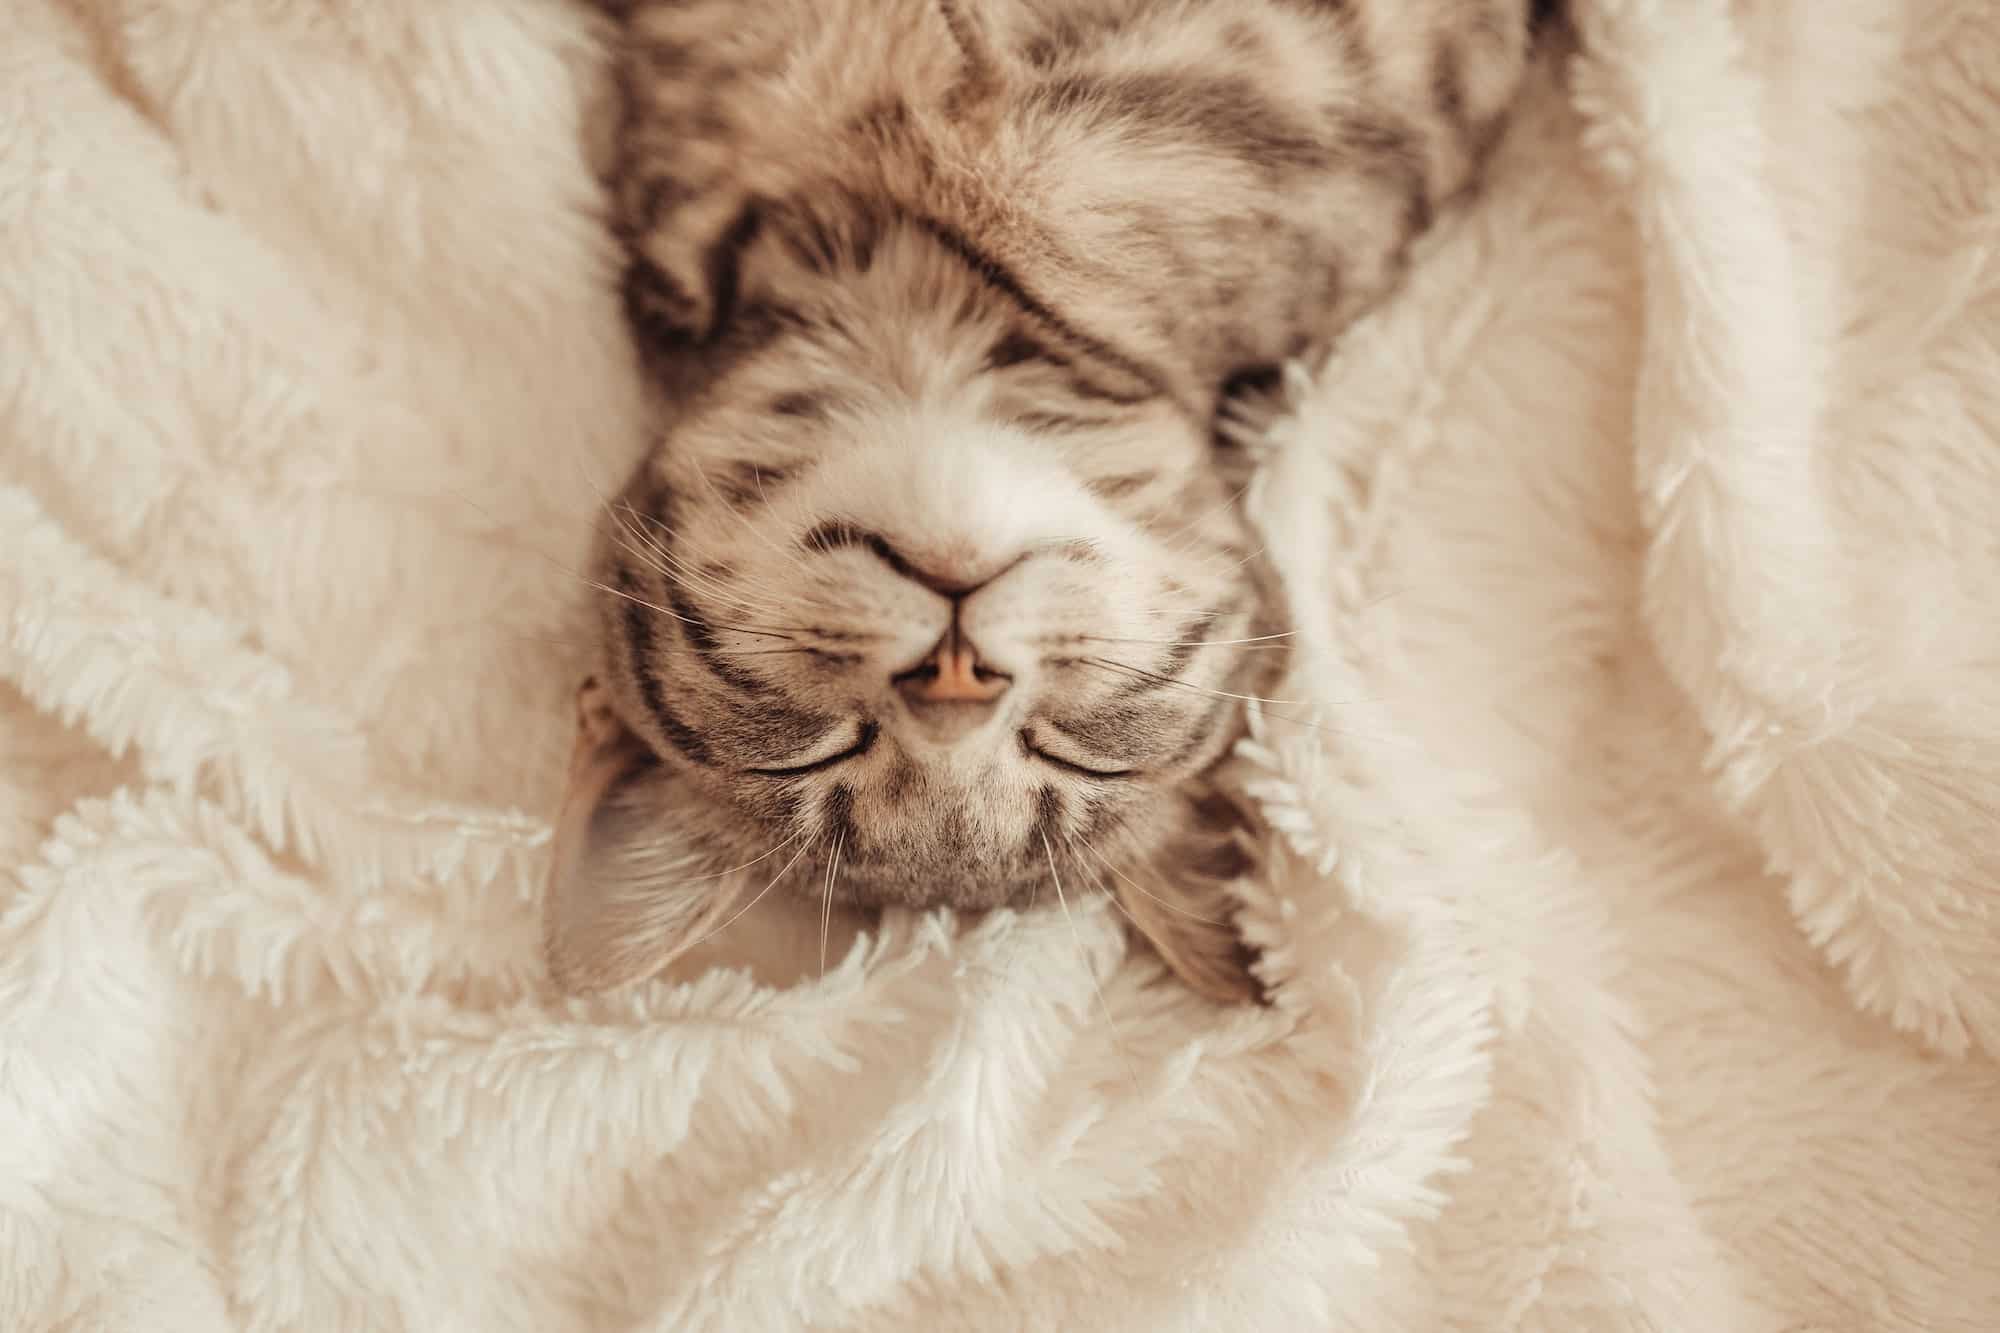 Cute little grey kitten sleeps on the sofa under white soft blanket